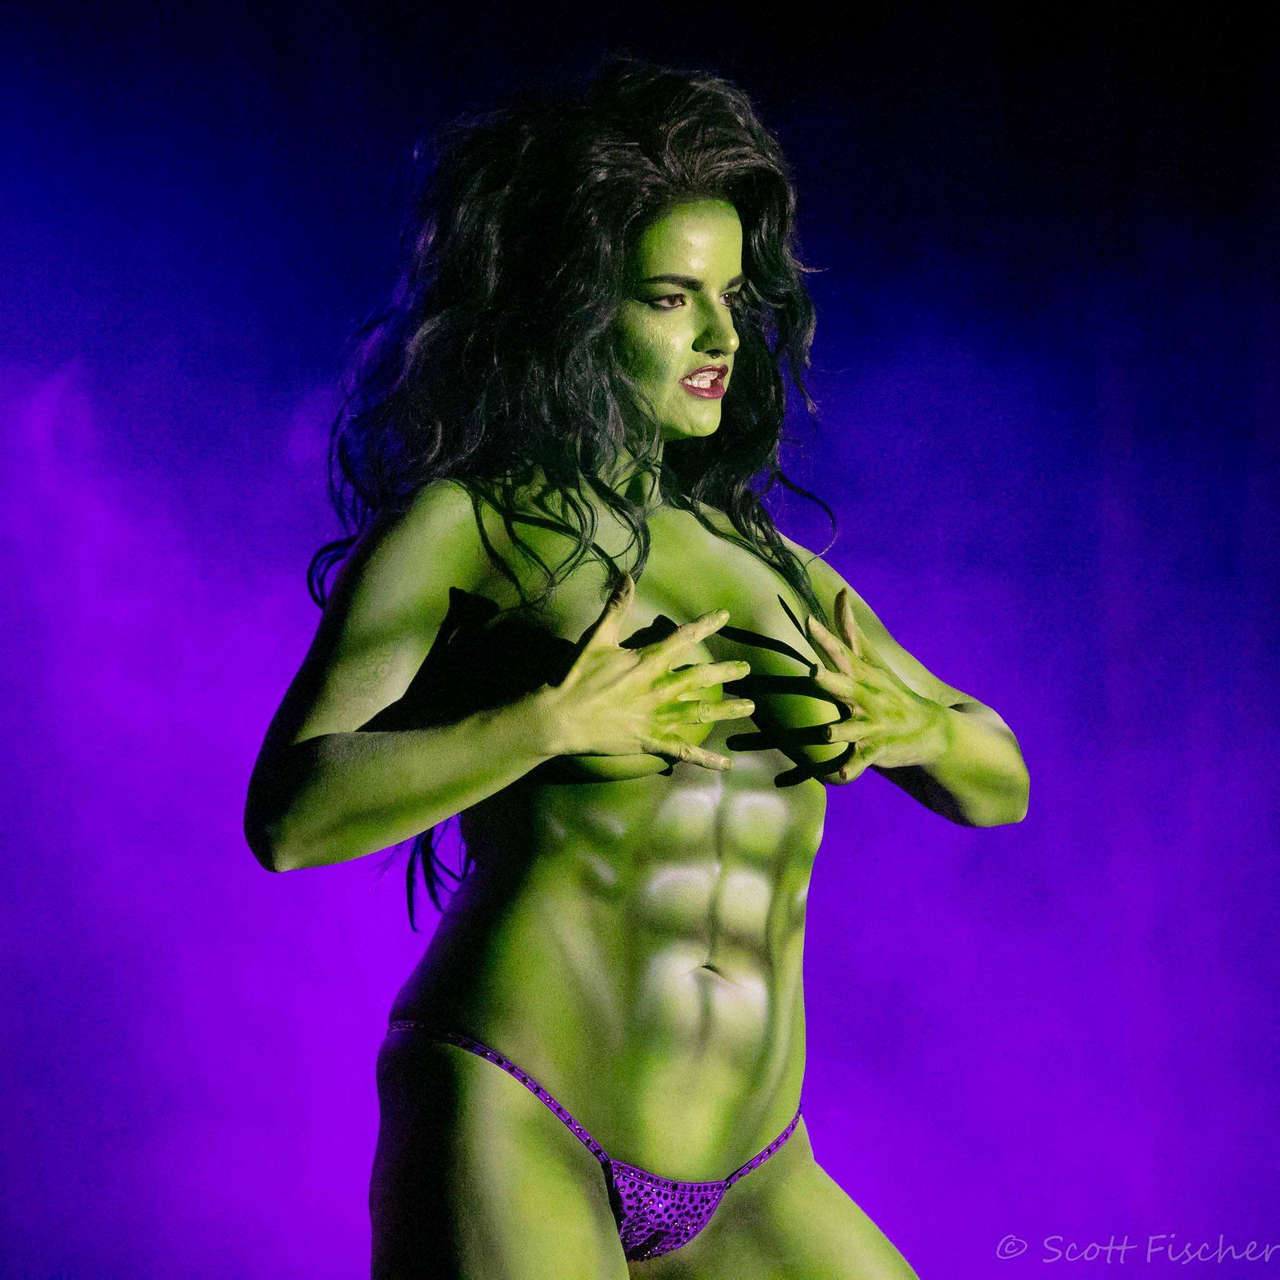 Vivienne Vermuth Of Dallas Texas As She Hulk Photo By Scott Fische